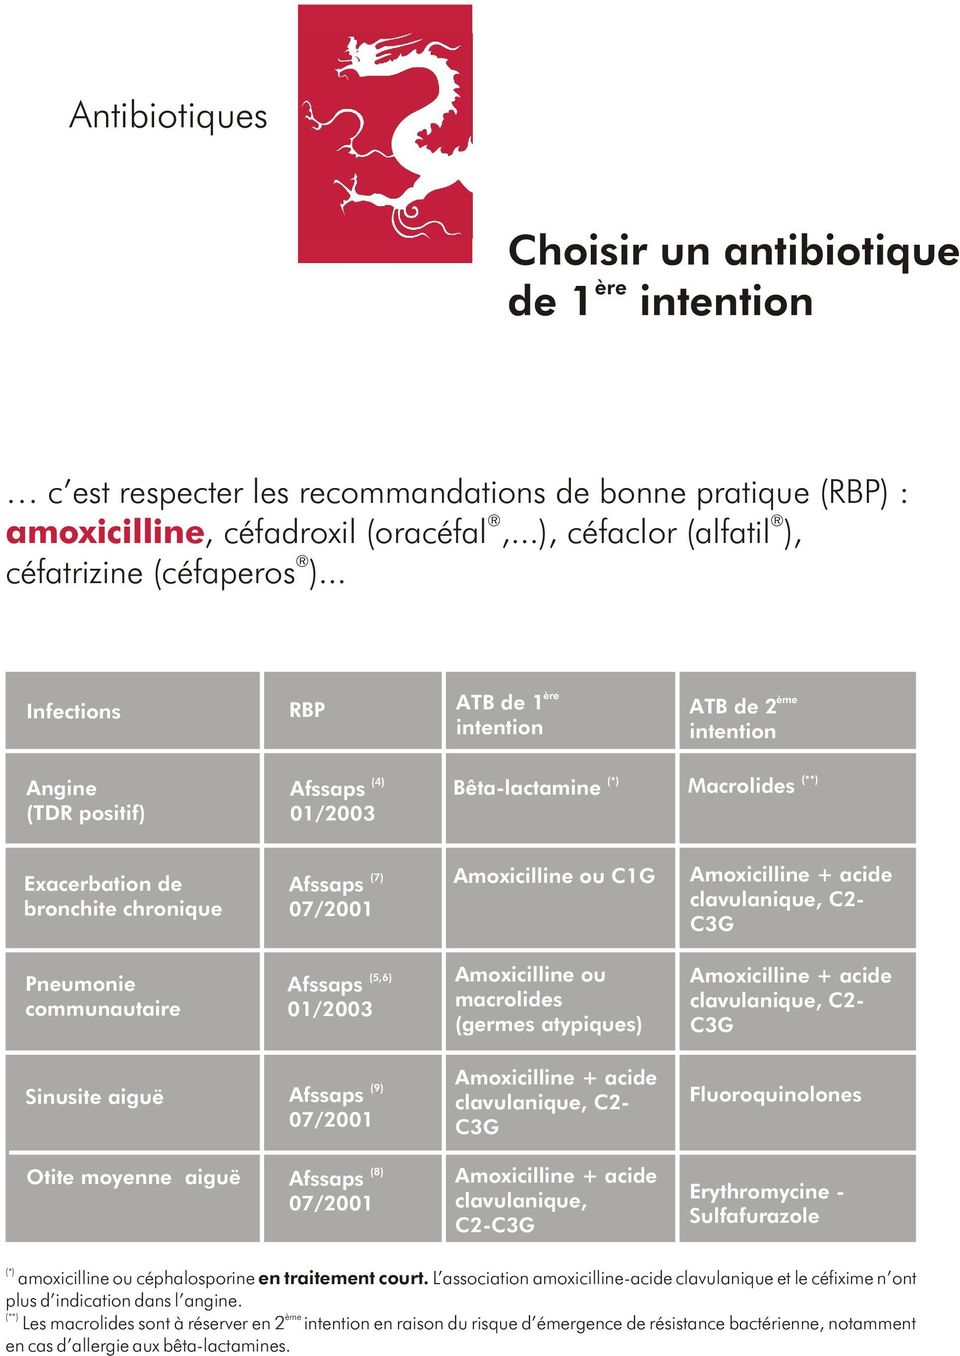 Amoxicilline + acide clavulanique, C2- C3G Pneumonie communautaire 01/2003 (5,6) Amoxicilline ou macrolides (germes atypiques) Amoxicilline + acide clavulanique, C2- C3G Sinusite aiguë 07/2001 (9)